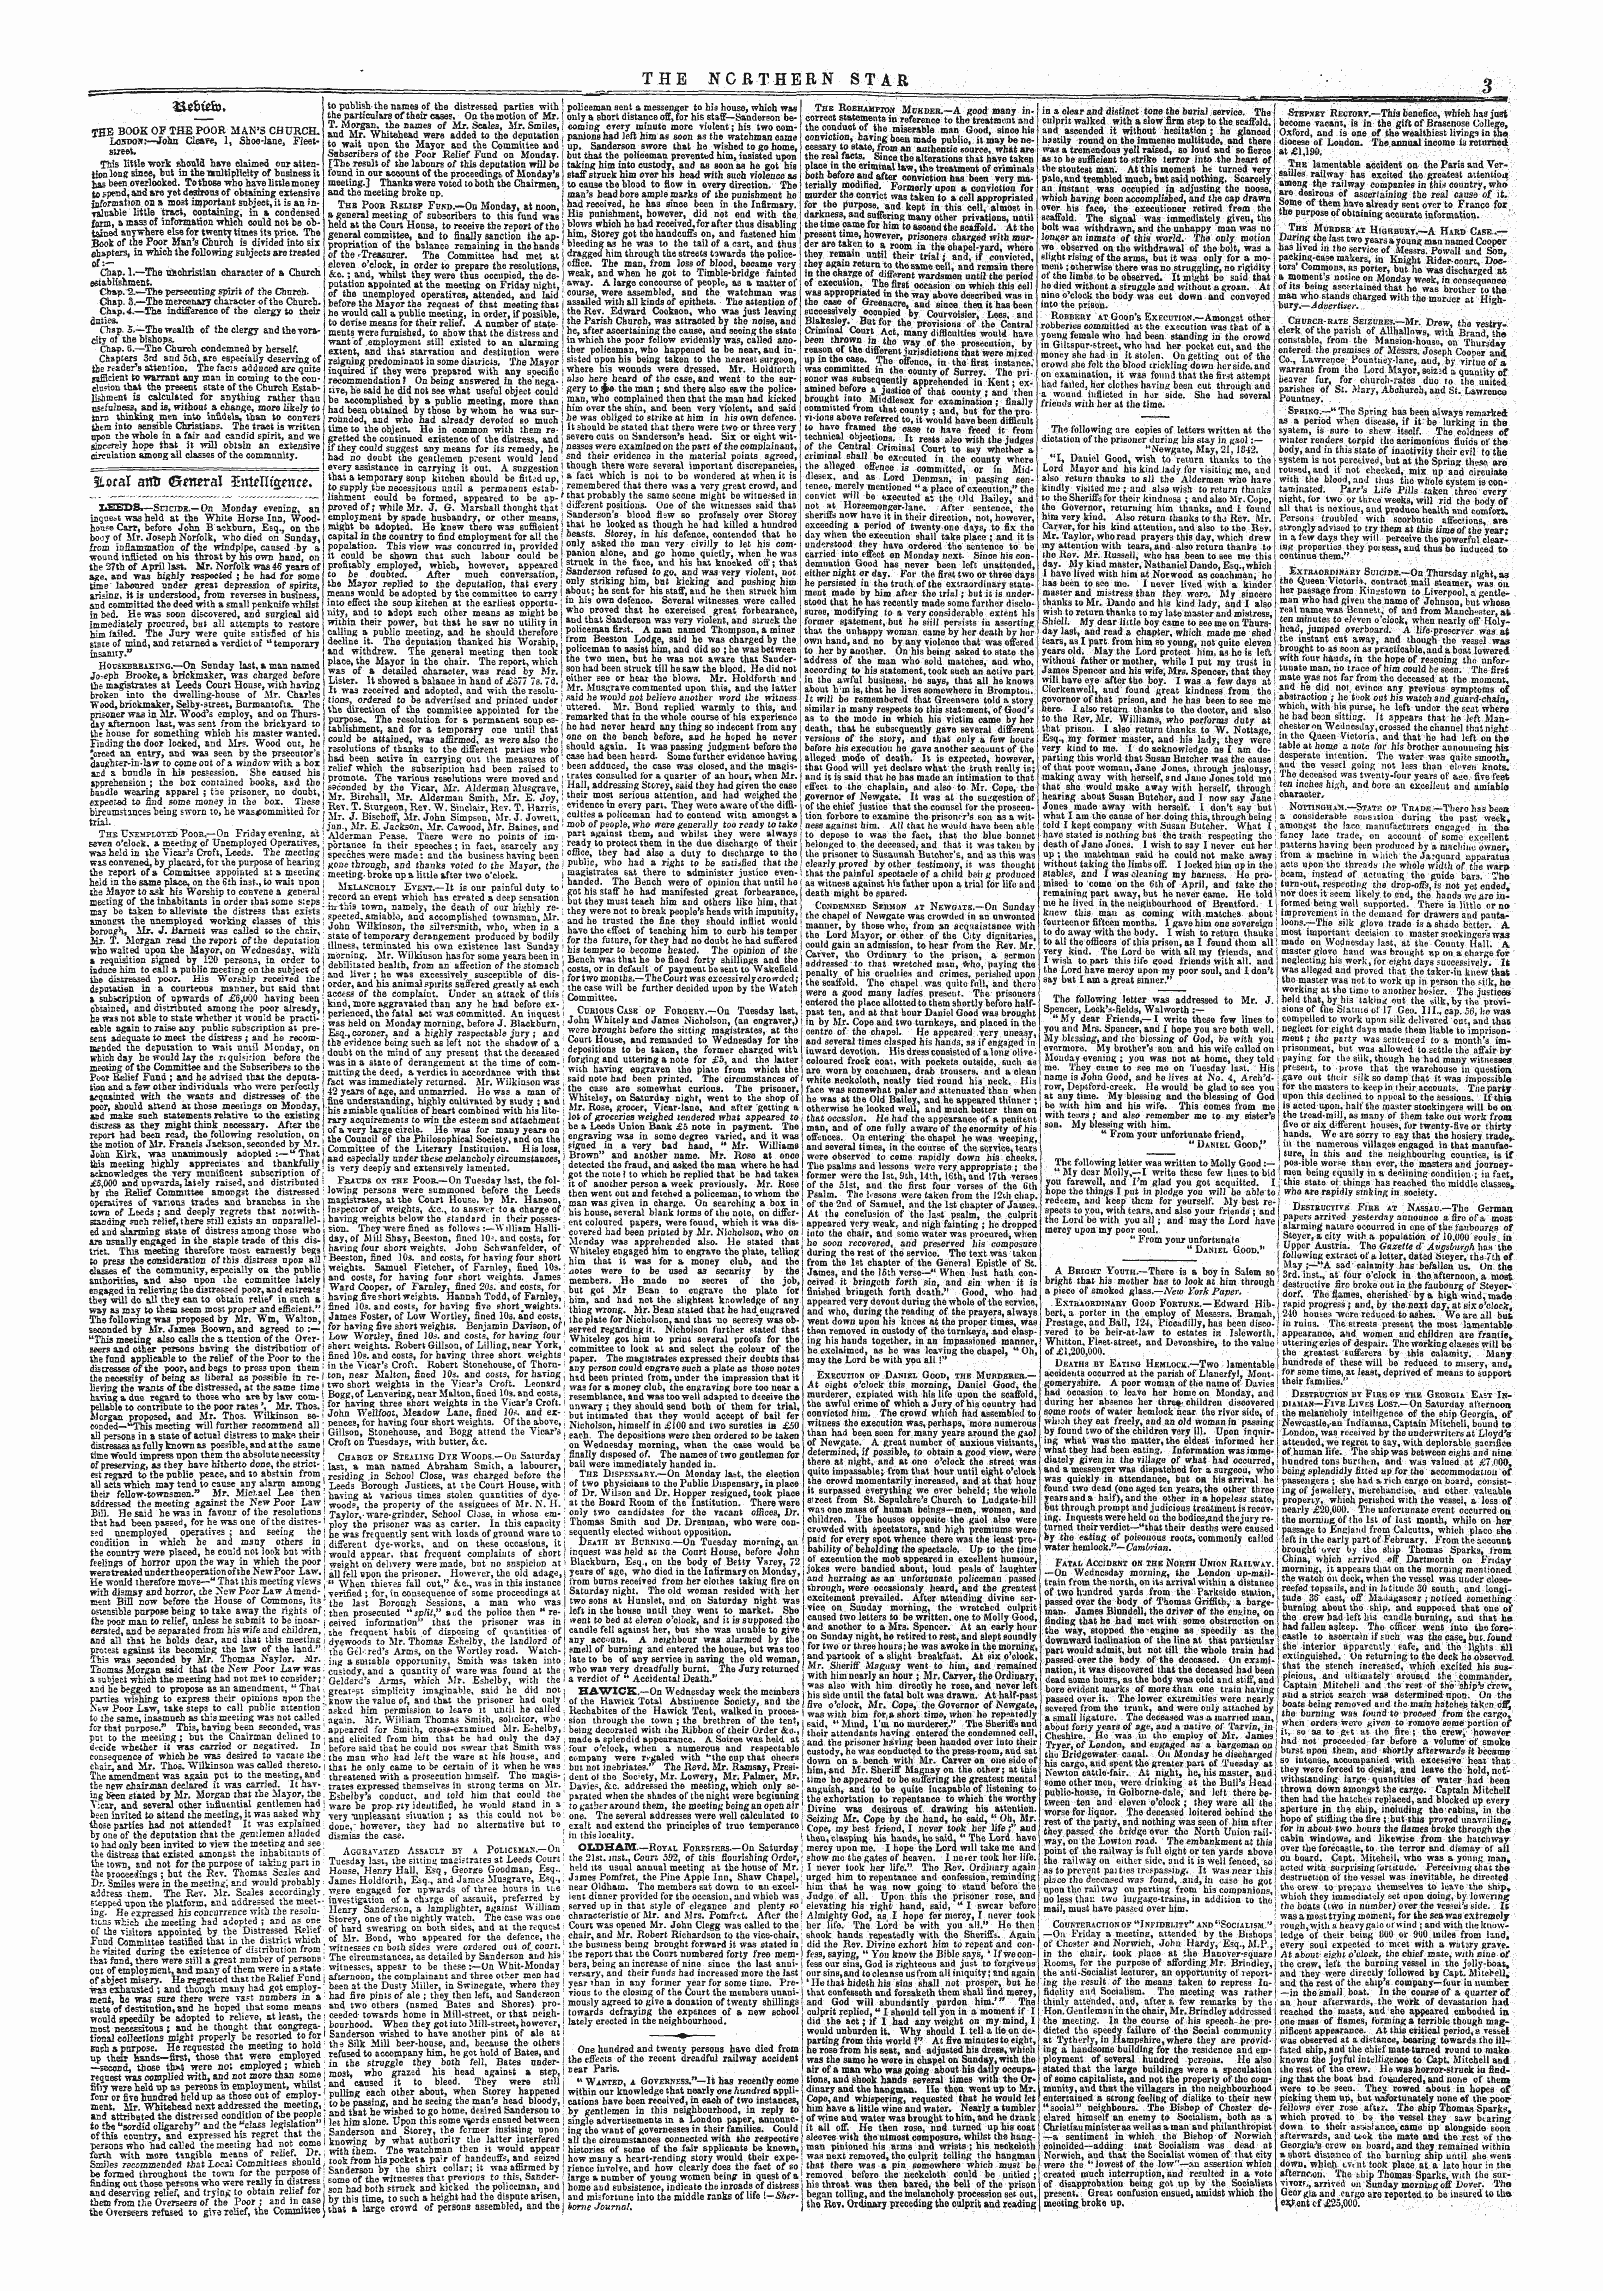 Northern Star (1837-1852): jS F Y, 1st edition - N&M.